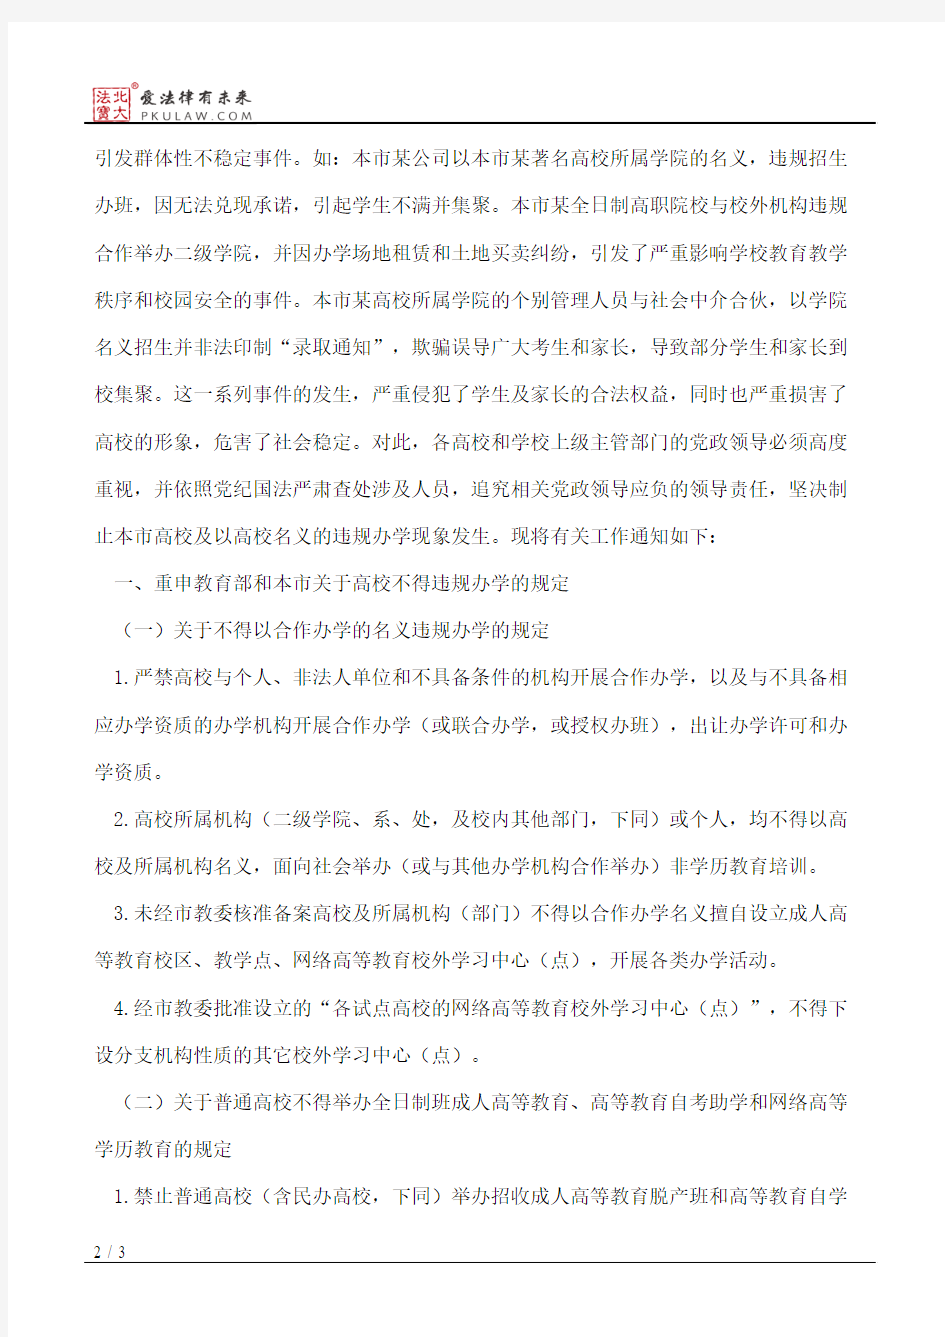 中共上海市科技教育工作委员会、上海市教育委员会关于重申教育部